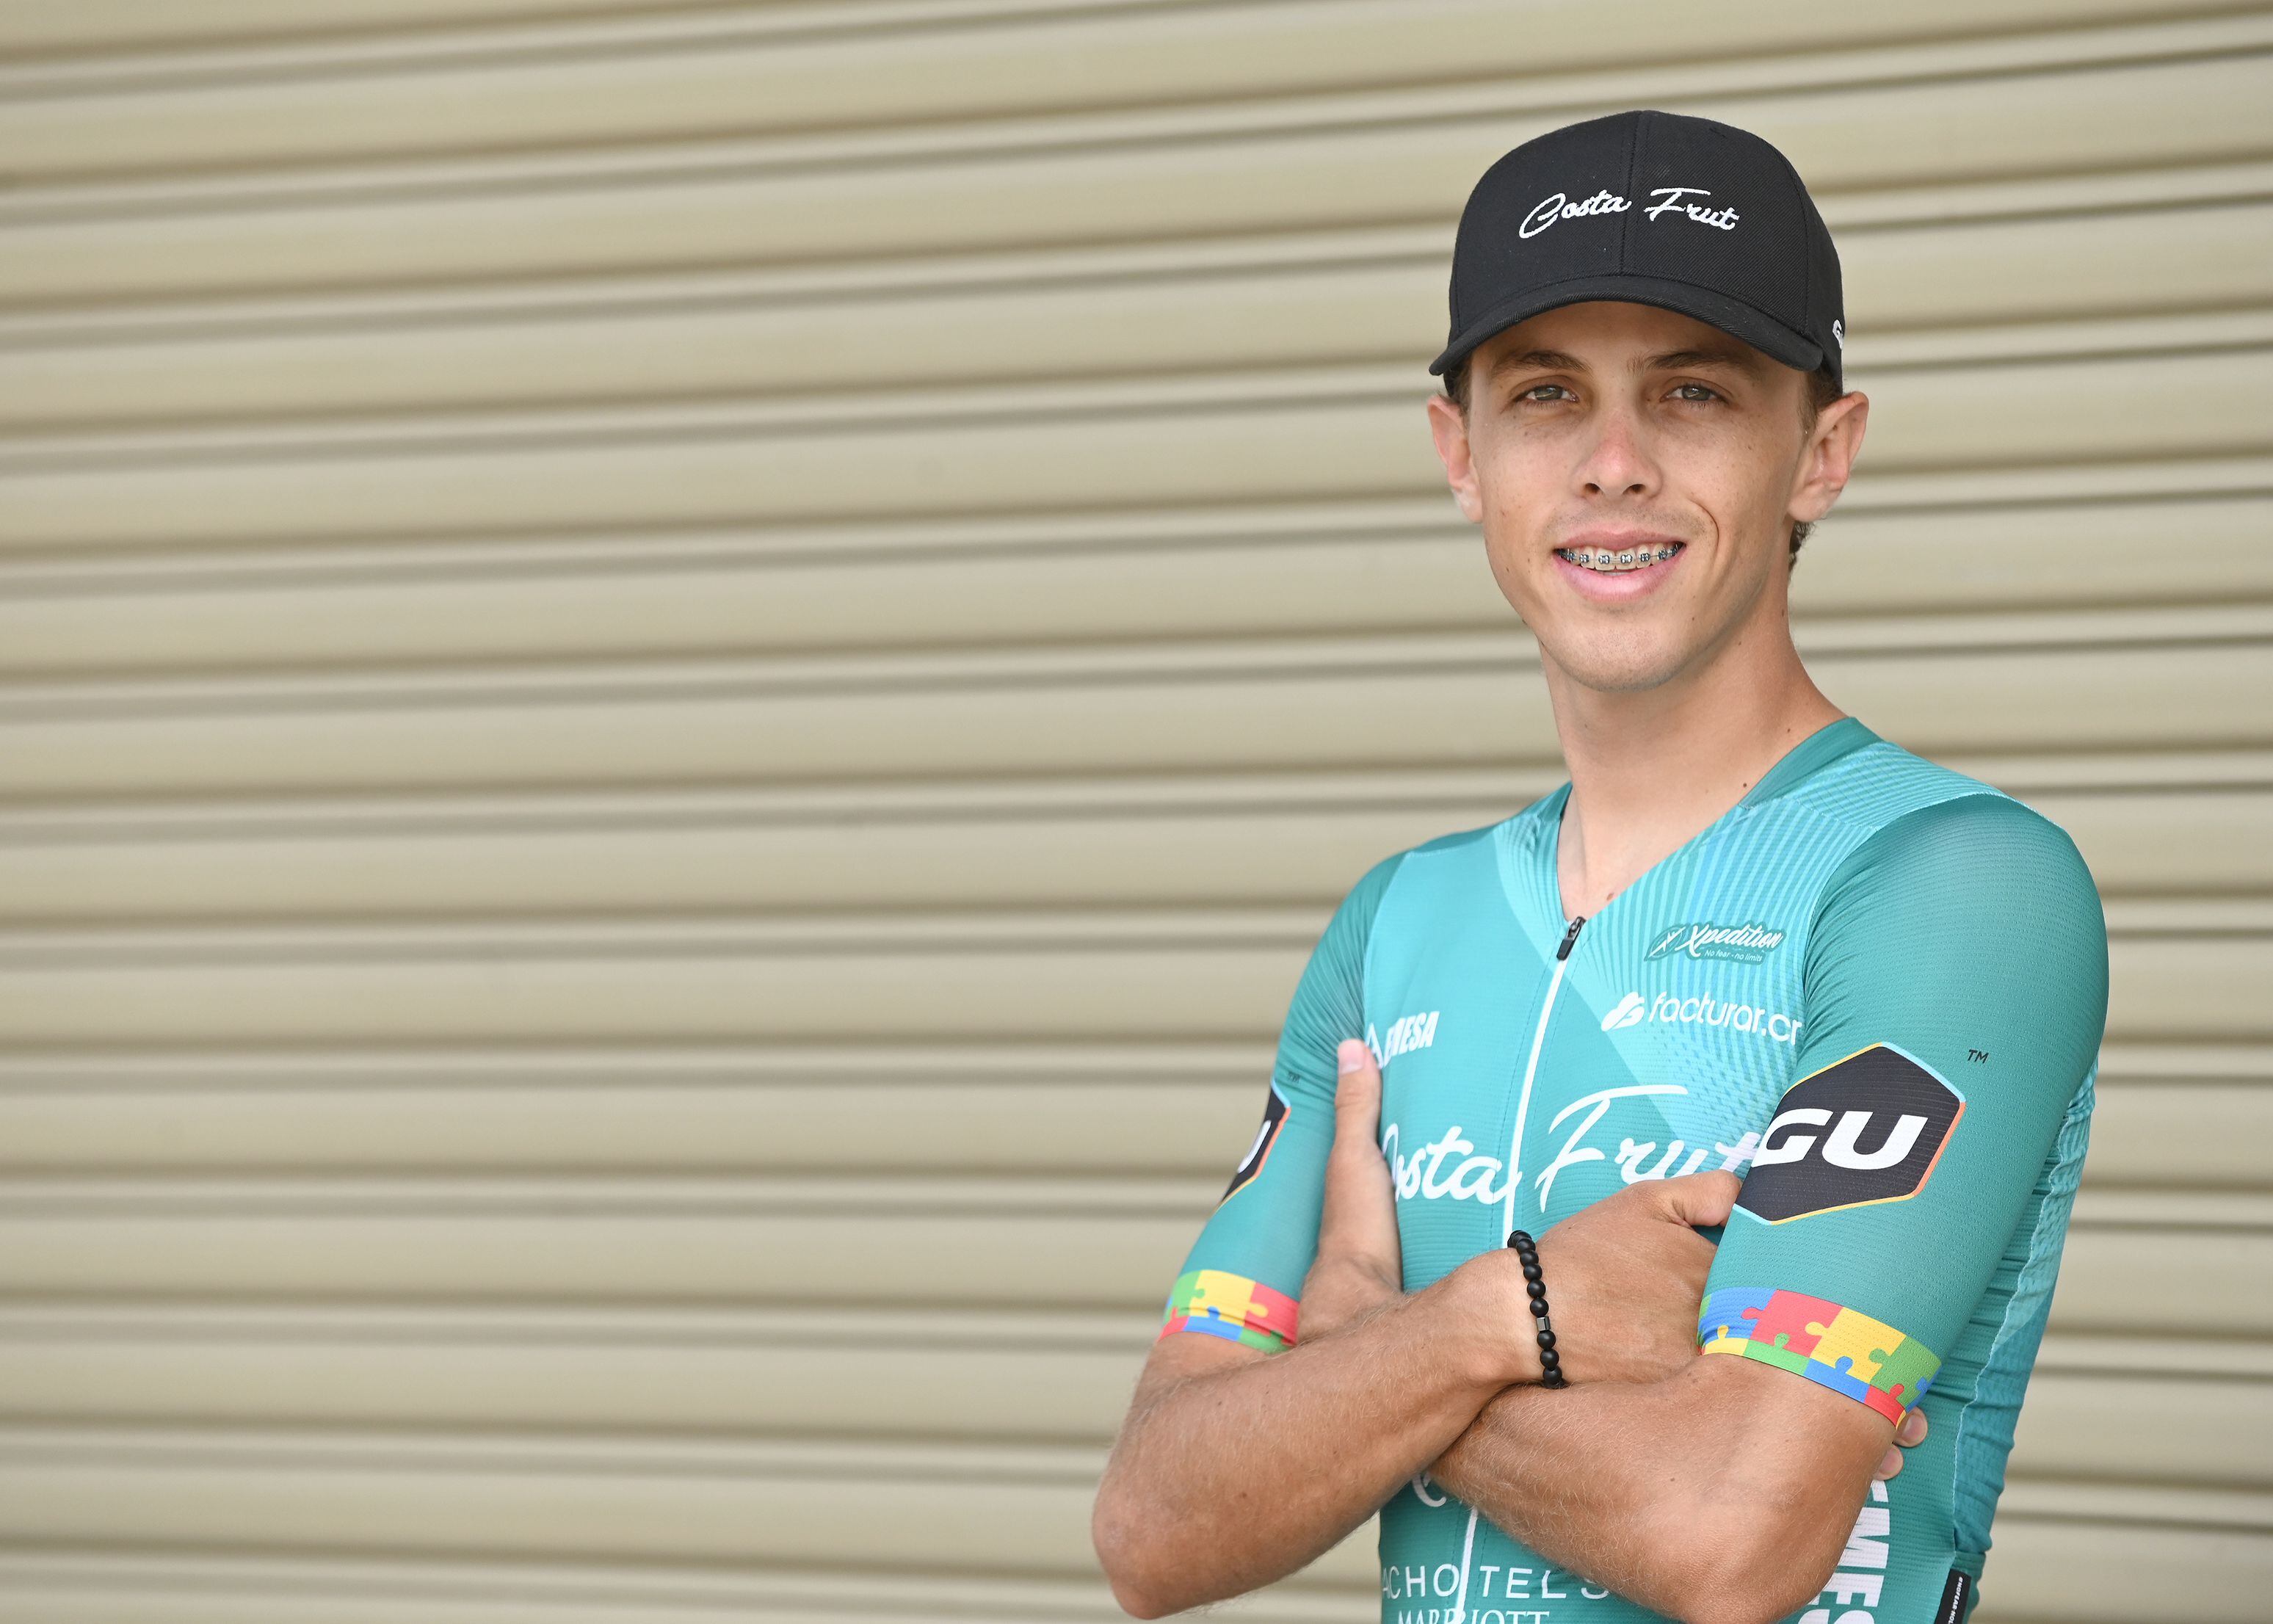 El ciclista Diego Umaña, quien es oriundo de Ciudad Quesada, San Carlos tiene 21 años y es corredor del Team Costa Frut.